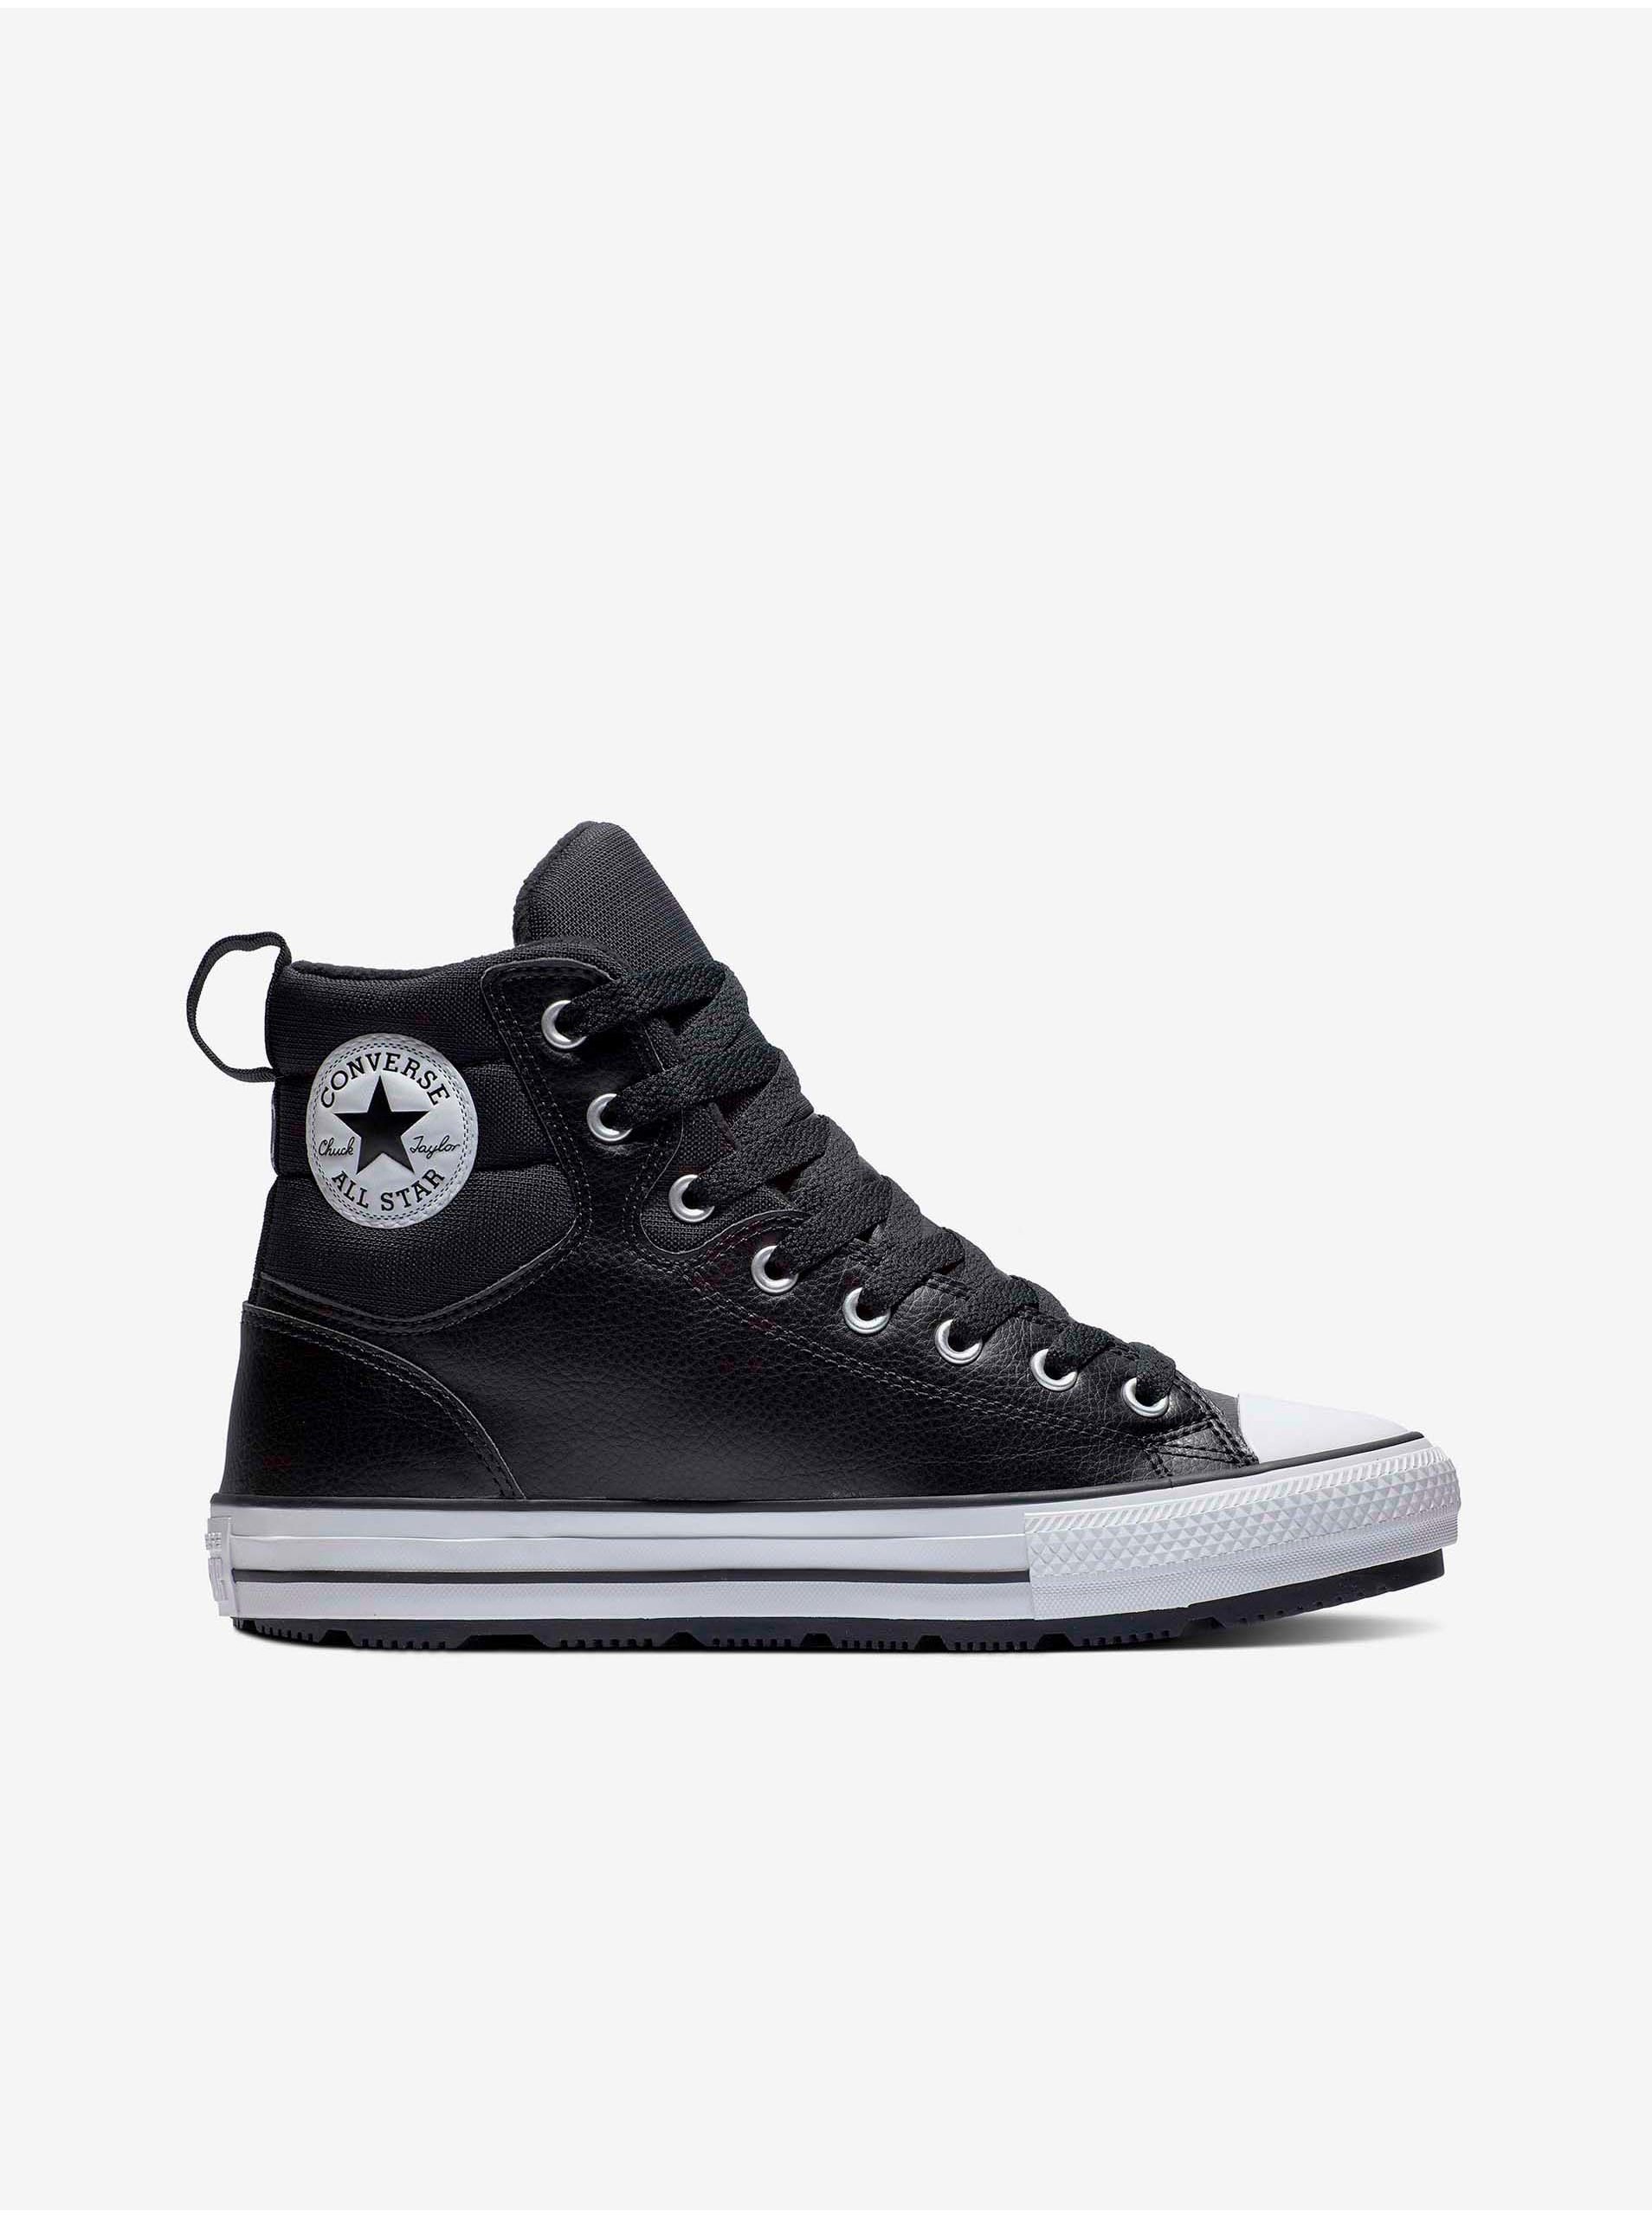 E-shop Černé unisex kotníkové tenisky Converse Chuck Taylor All Star Faux Leather Berkshire Boot